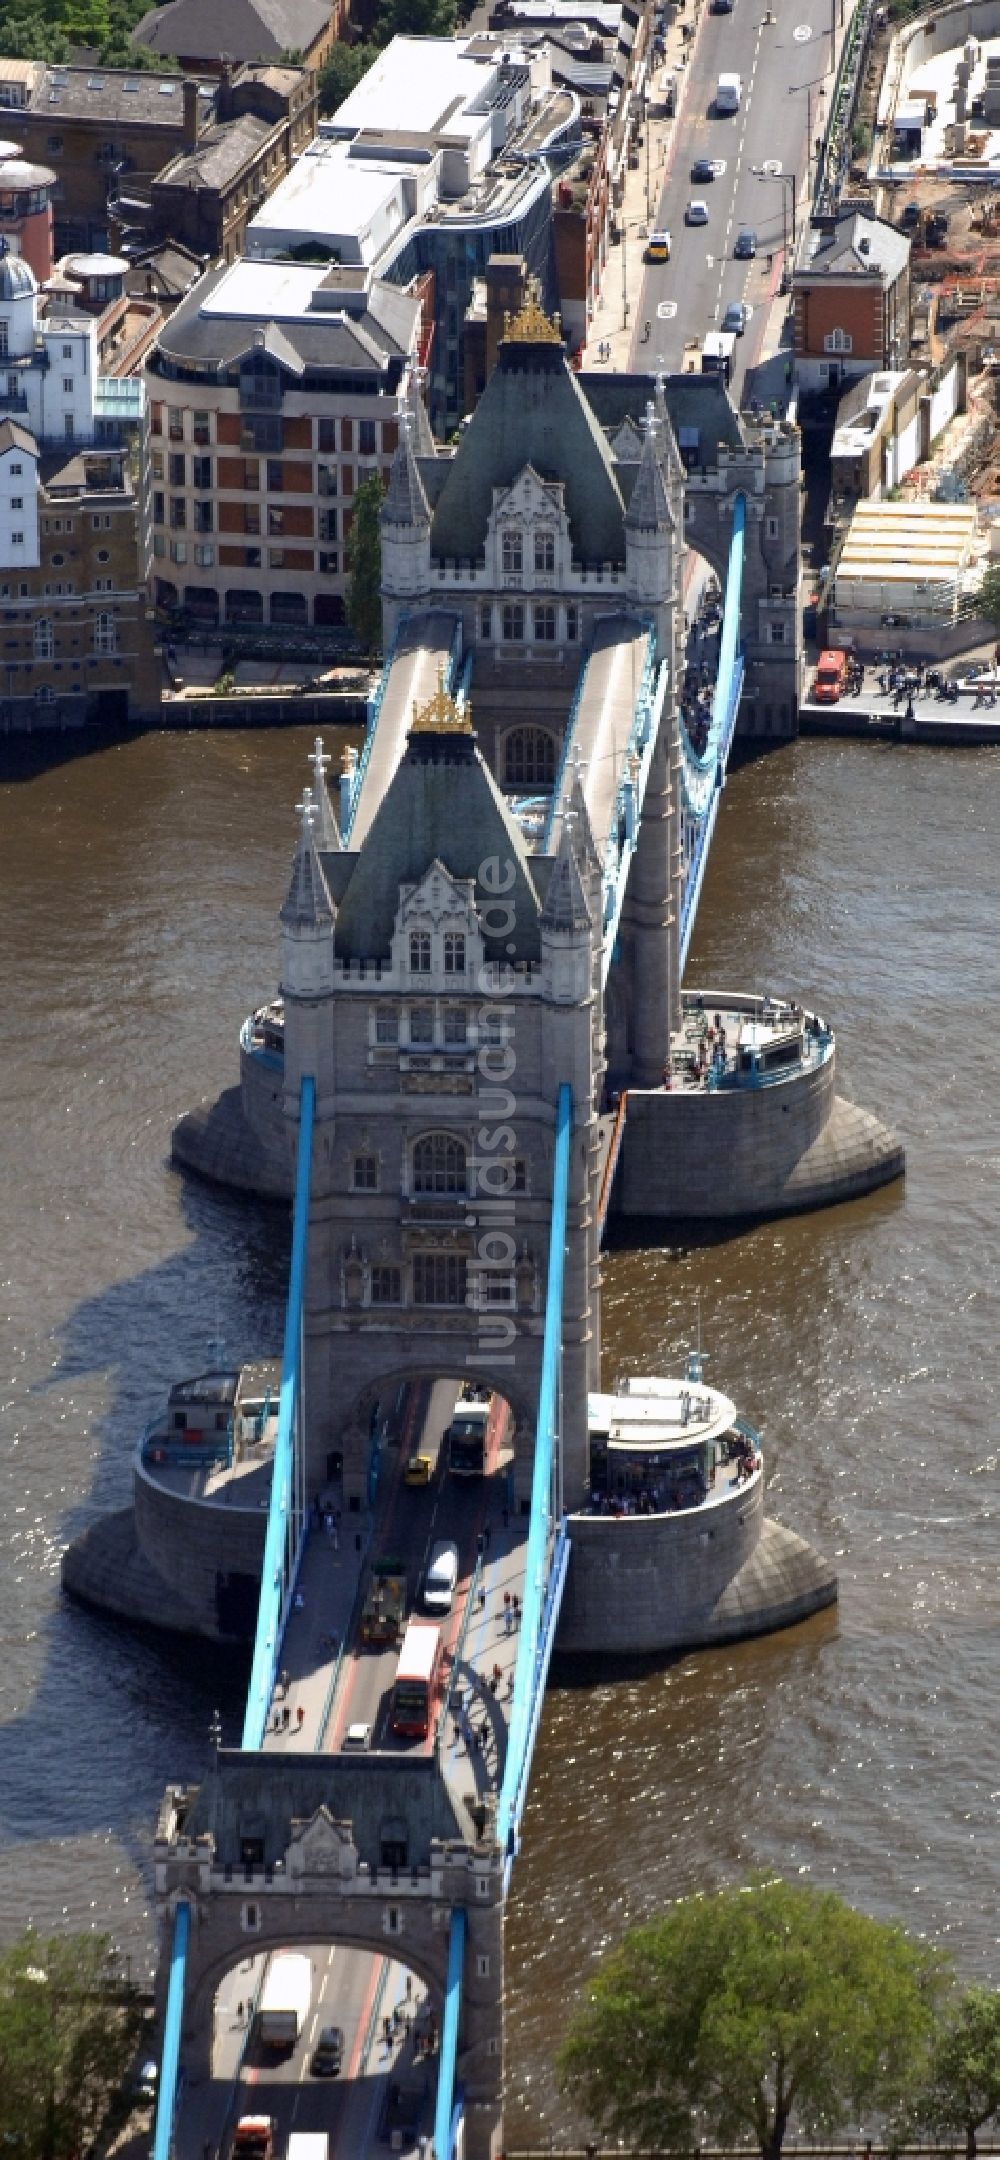 London von oben - Tower Bridge über der Themse - das Wahrzeichen von London